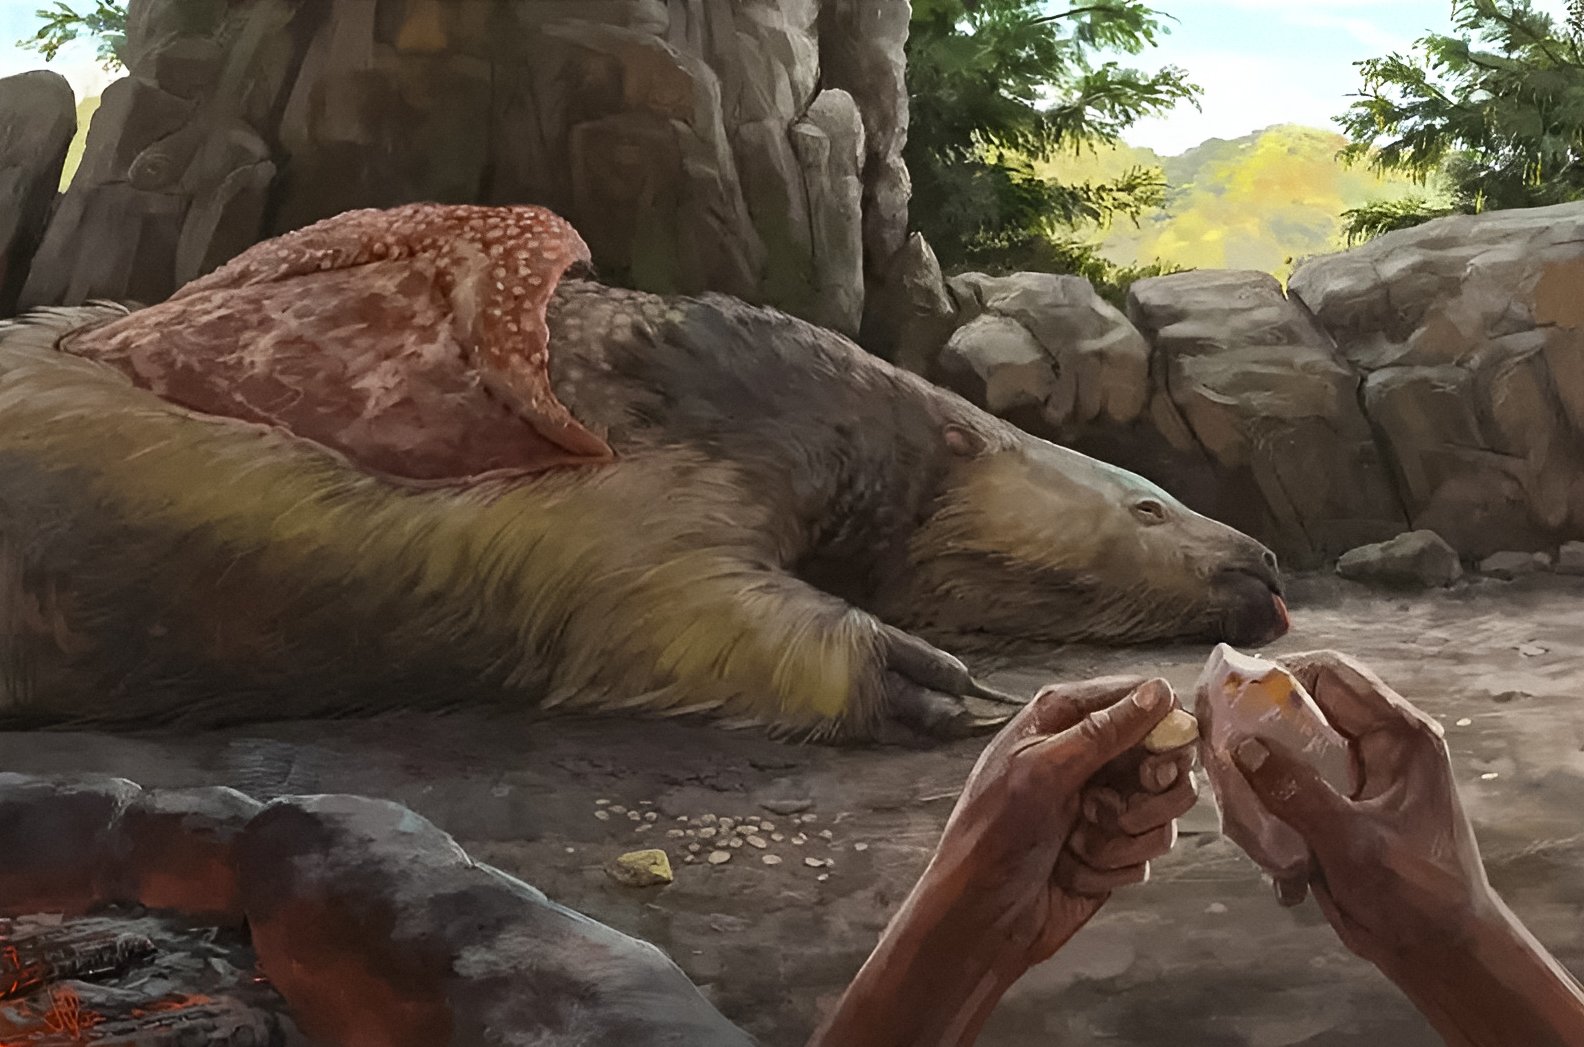 Mennesker var i Sydamerika for mindst 25,000 år siden, gamle knoglevedhæng afslører 1